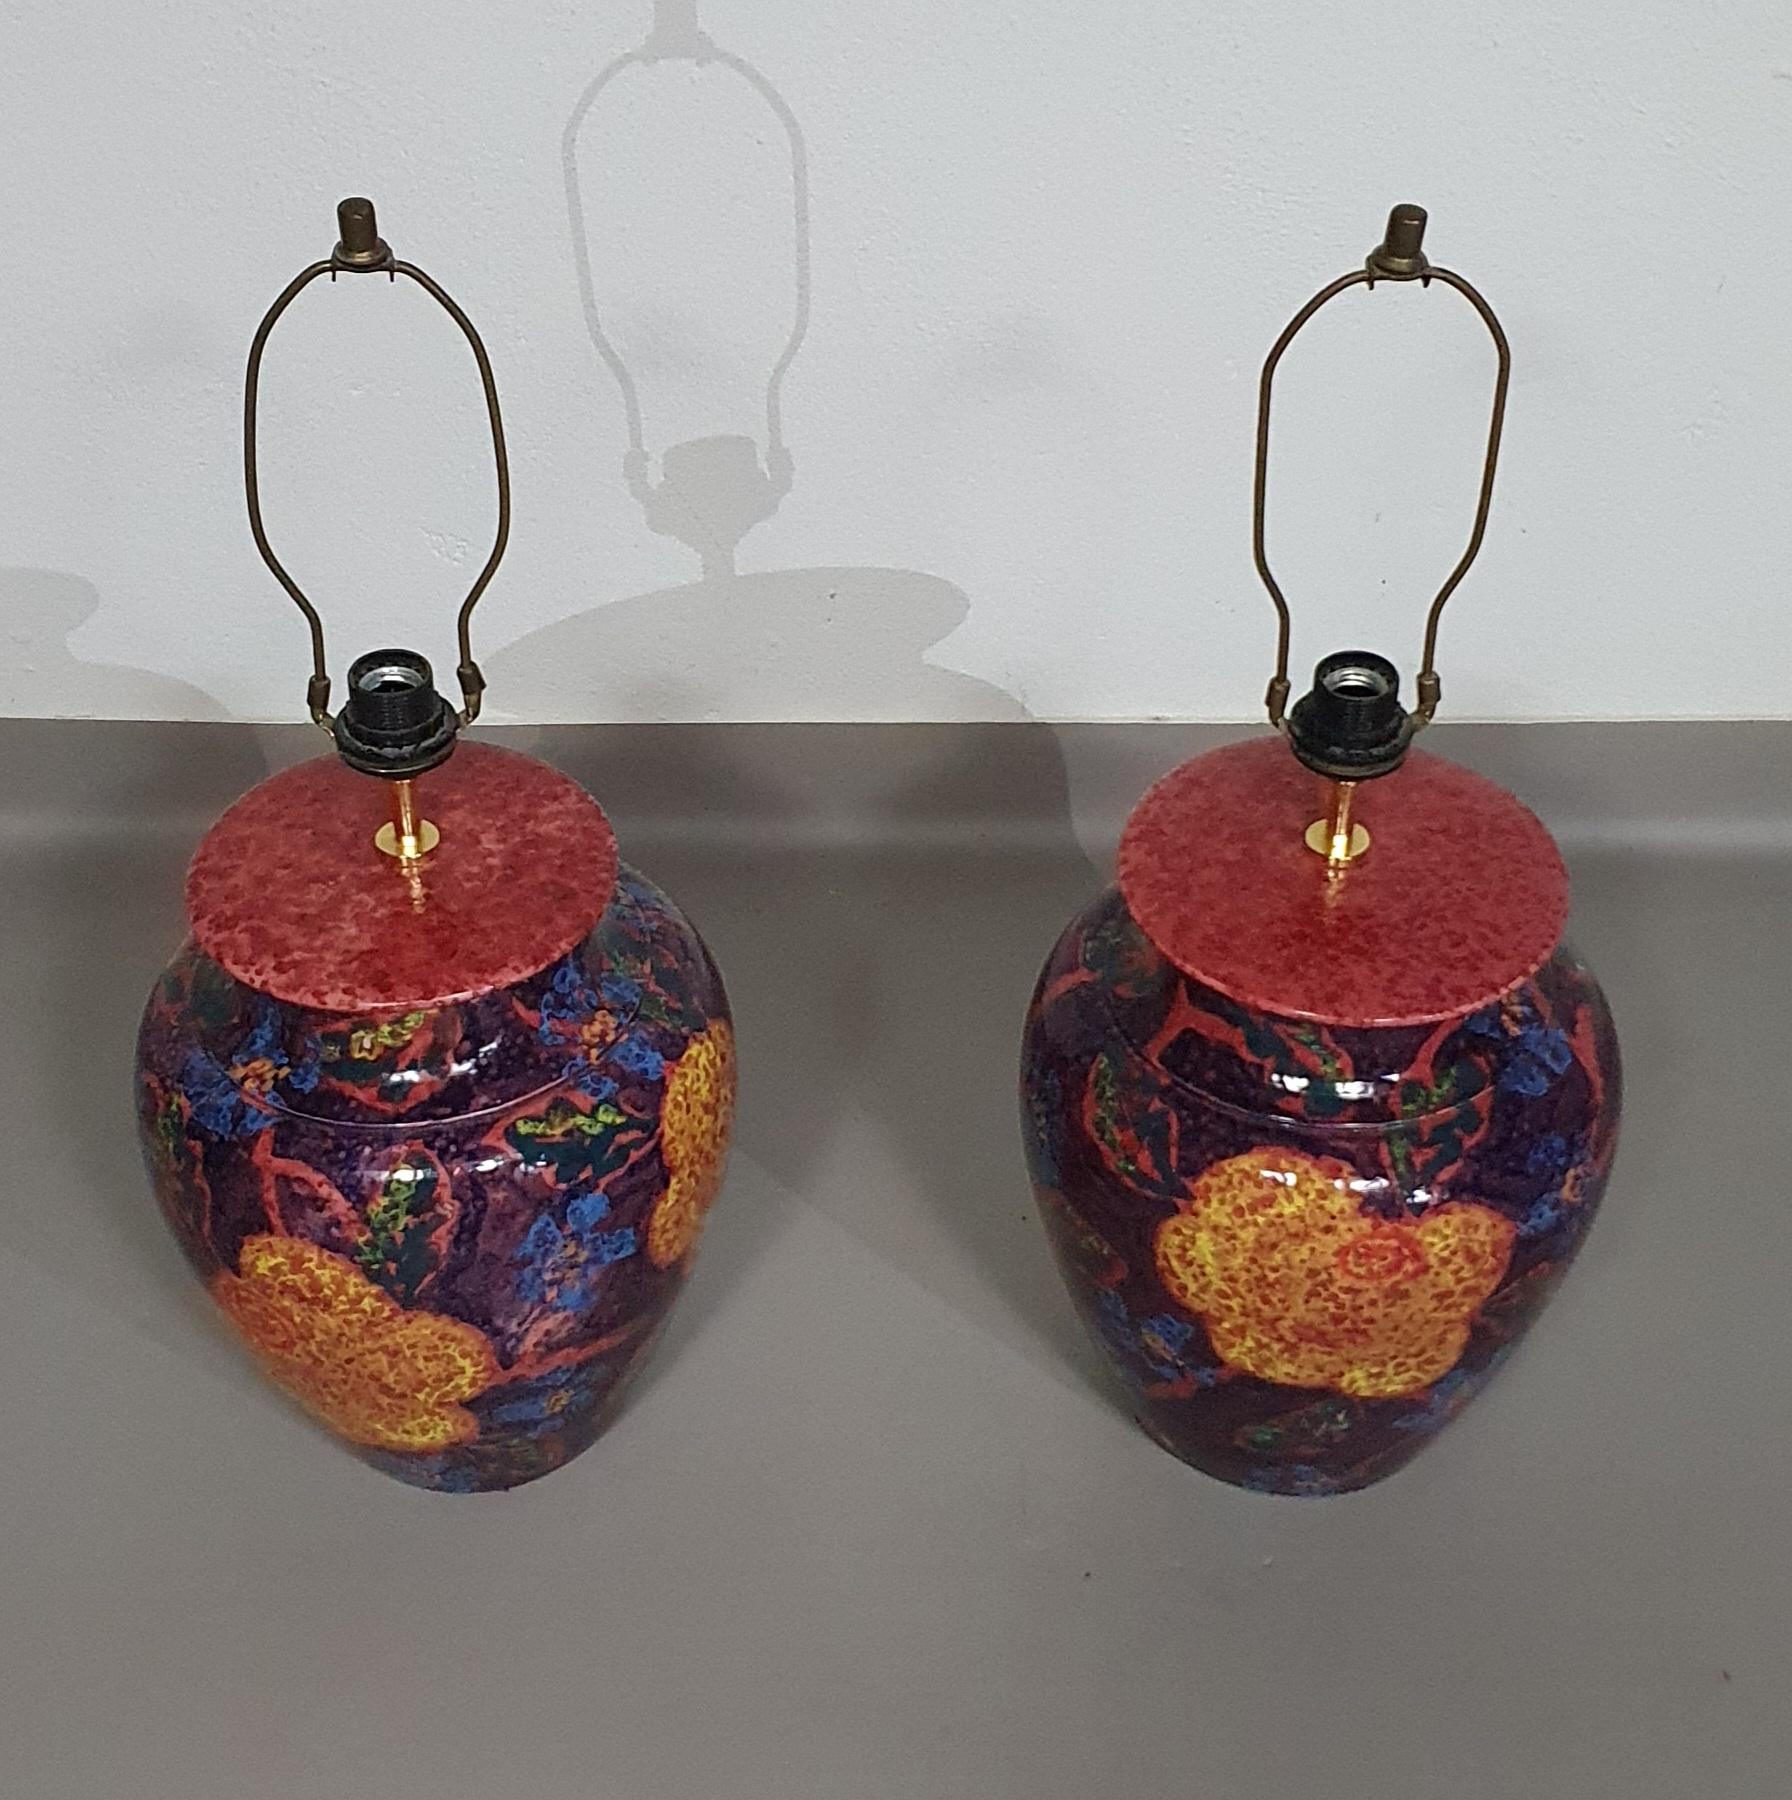 Porte-lampes en céramique / vase émaillé tourné à la main années 70 (probablement français) Hauteur / vase 40 cm Profondeur / 32 cm Hauteur totale 74 cm